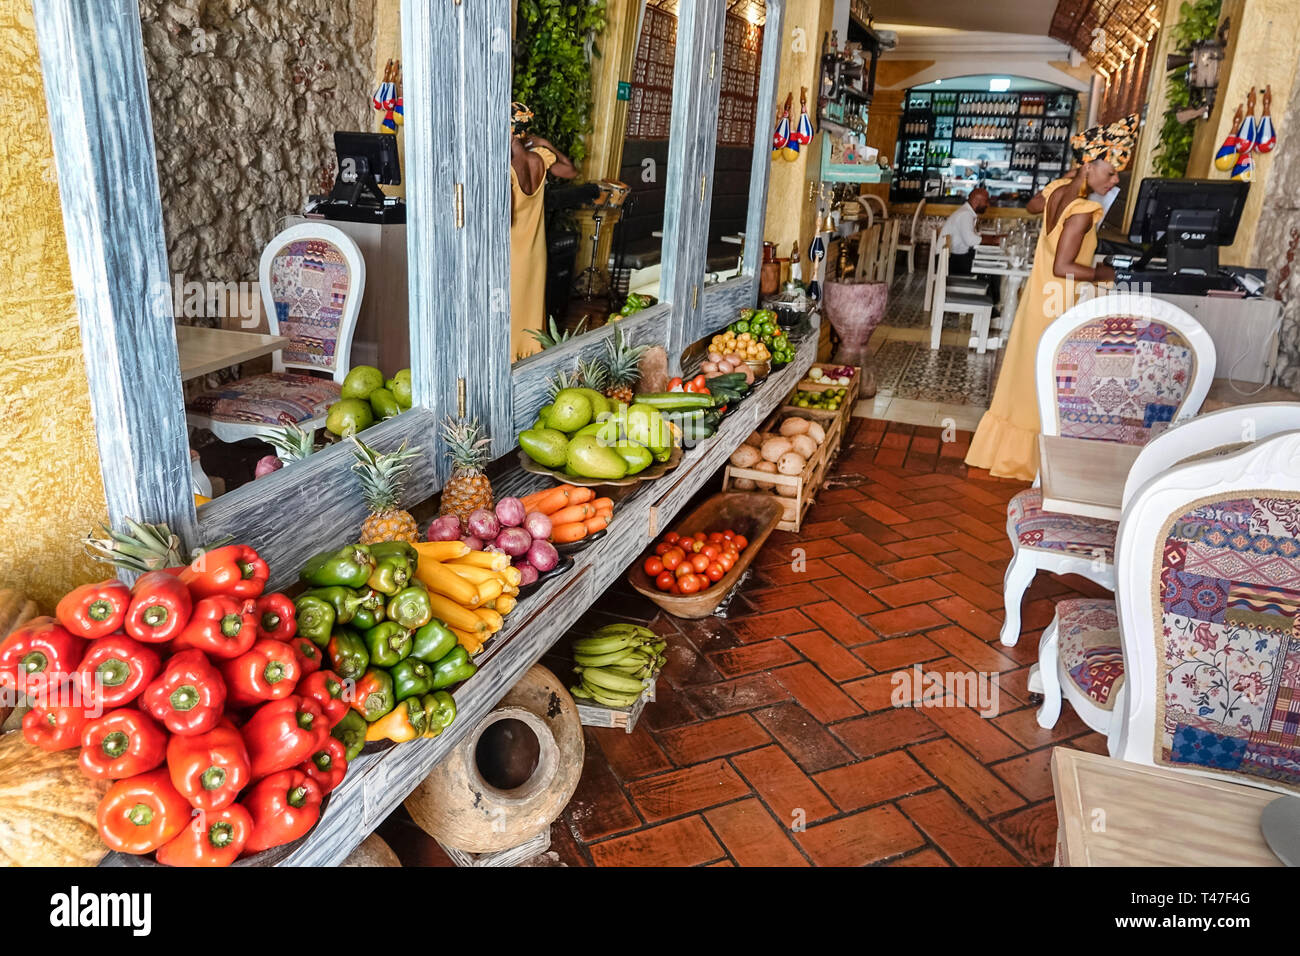 Cartagena Colombia, Zaitun, ristorante ristoranti ristorazione caffè caffè, produrre esposizione di verdure, arredamento, ingresso, COL190122111 Foto Stock